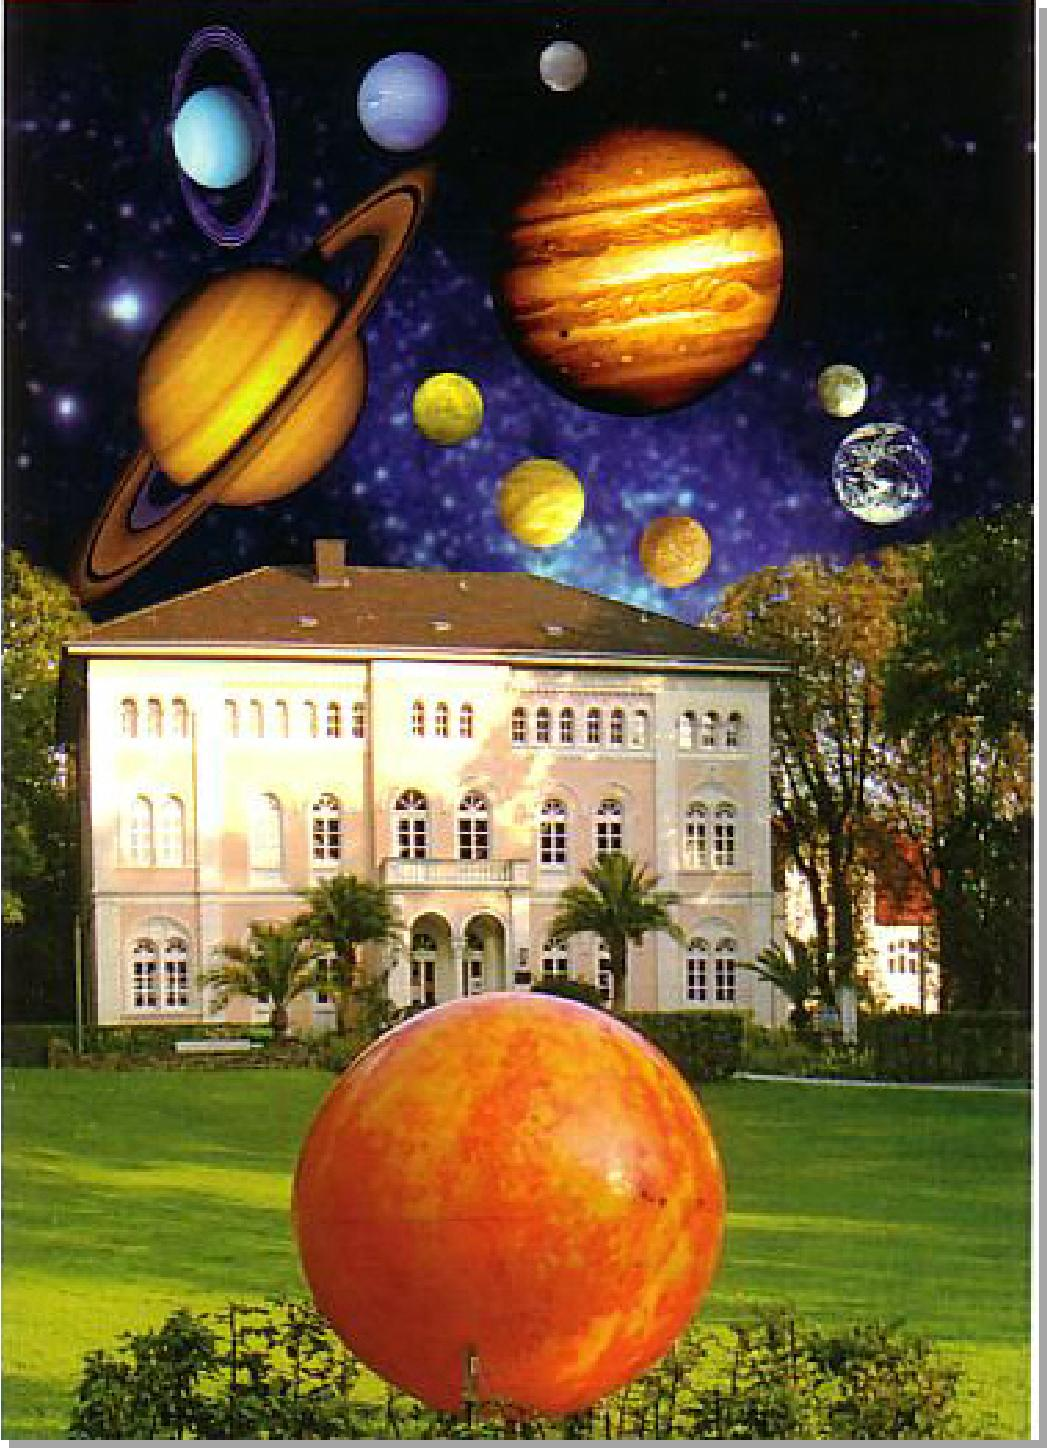 Der Planetenweg in Bad Lippspringe Pädagogischdidaktisches Konzept Im Mai 2006 eröffnete die Planetariumsgesellschaft OWL e. V. in Kooperation mit der Stadt Bad Lippspringe den Planetenweg.